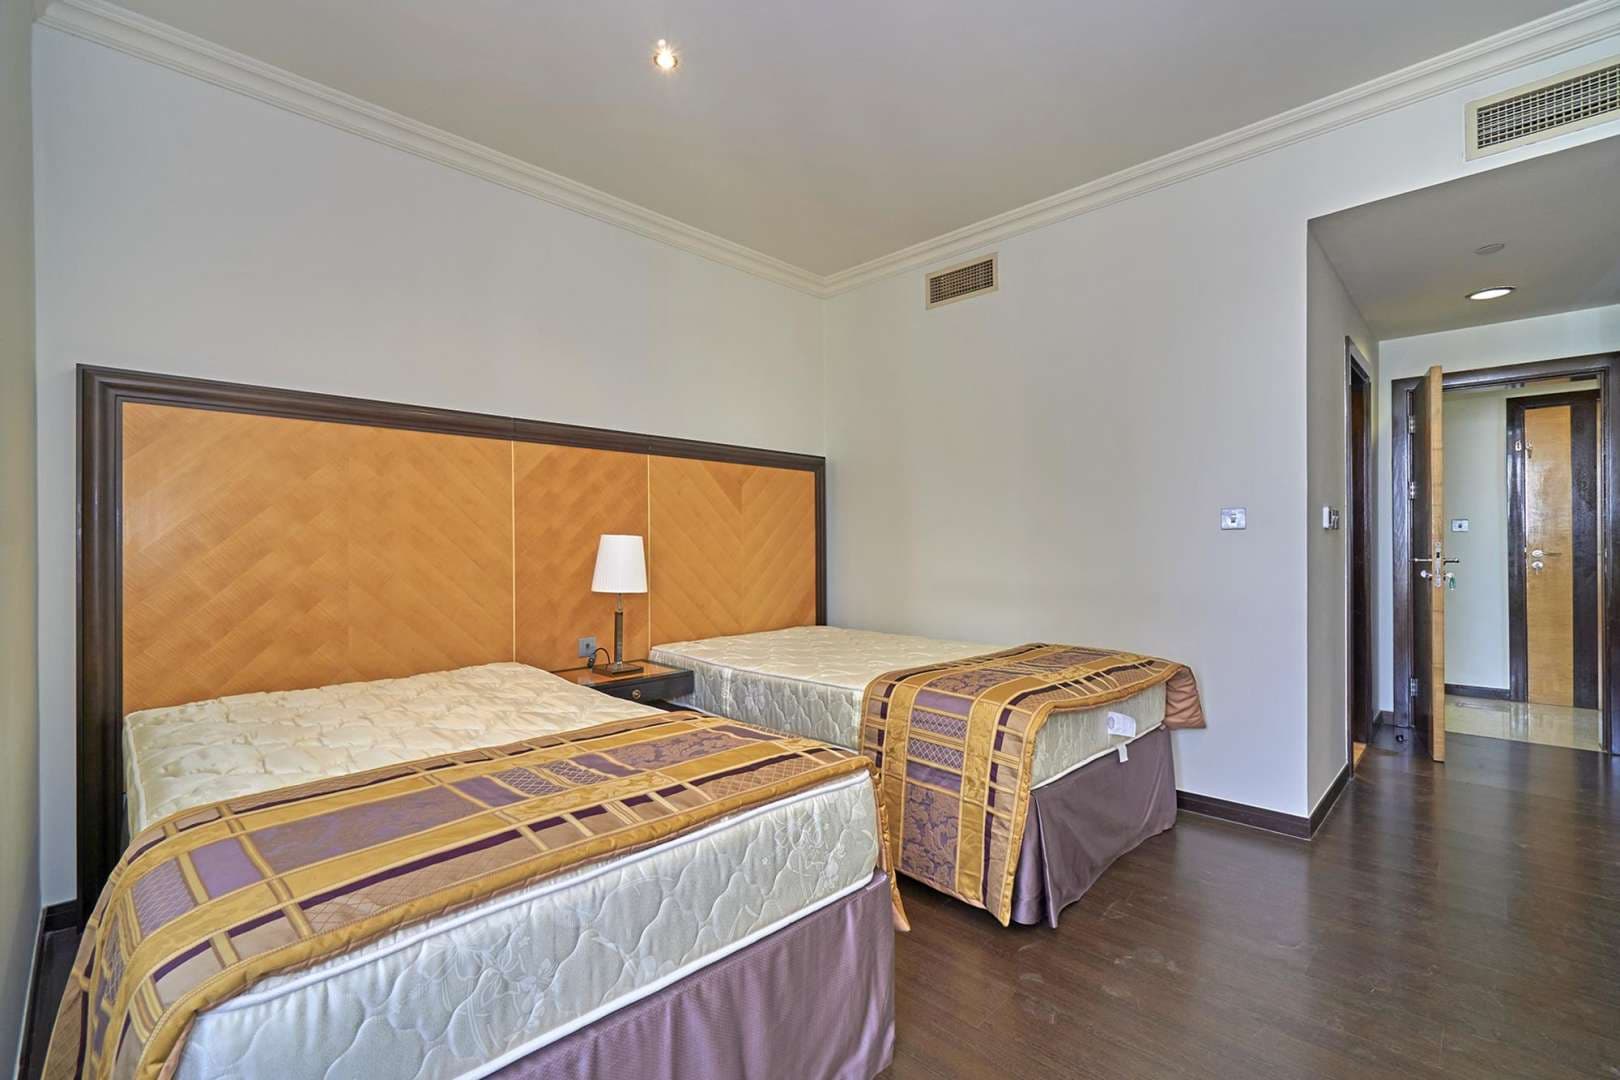 2 Bedroom Apartment For Rent Murjan Lp04925 106f92cf282d2400.jpg